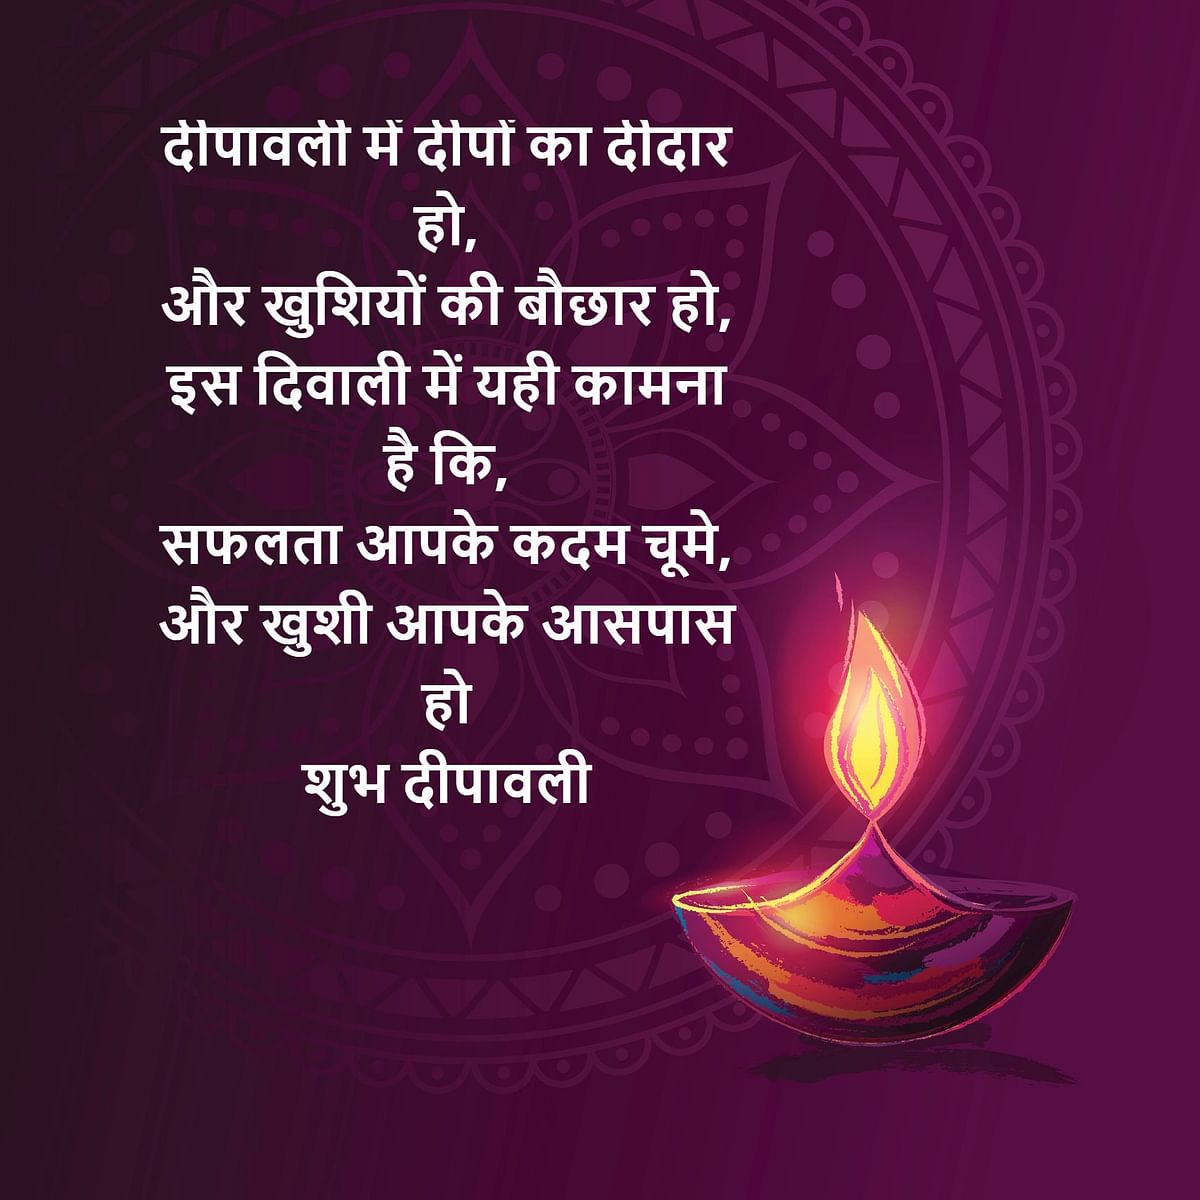 Happy Diwali Wishes: दिवाली के दिन लोगो के घर पूजा कर दियें जलाएं जाते हैं, मिठाई खाते.